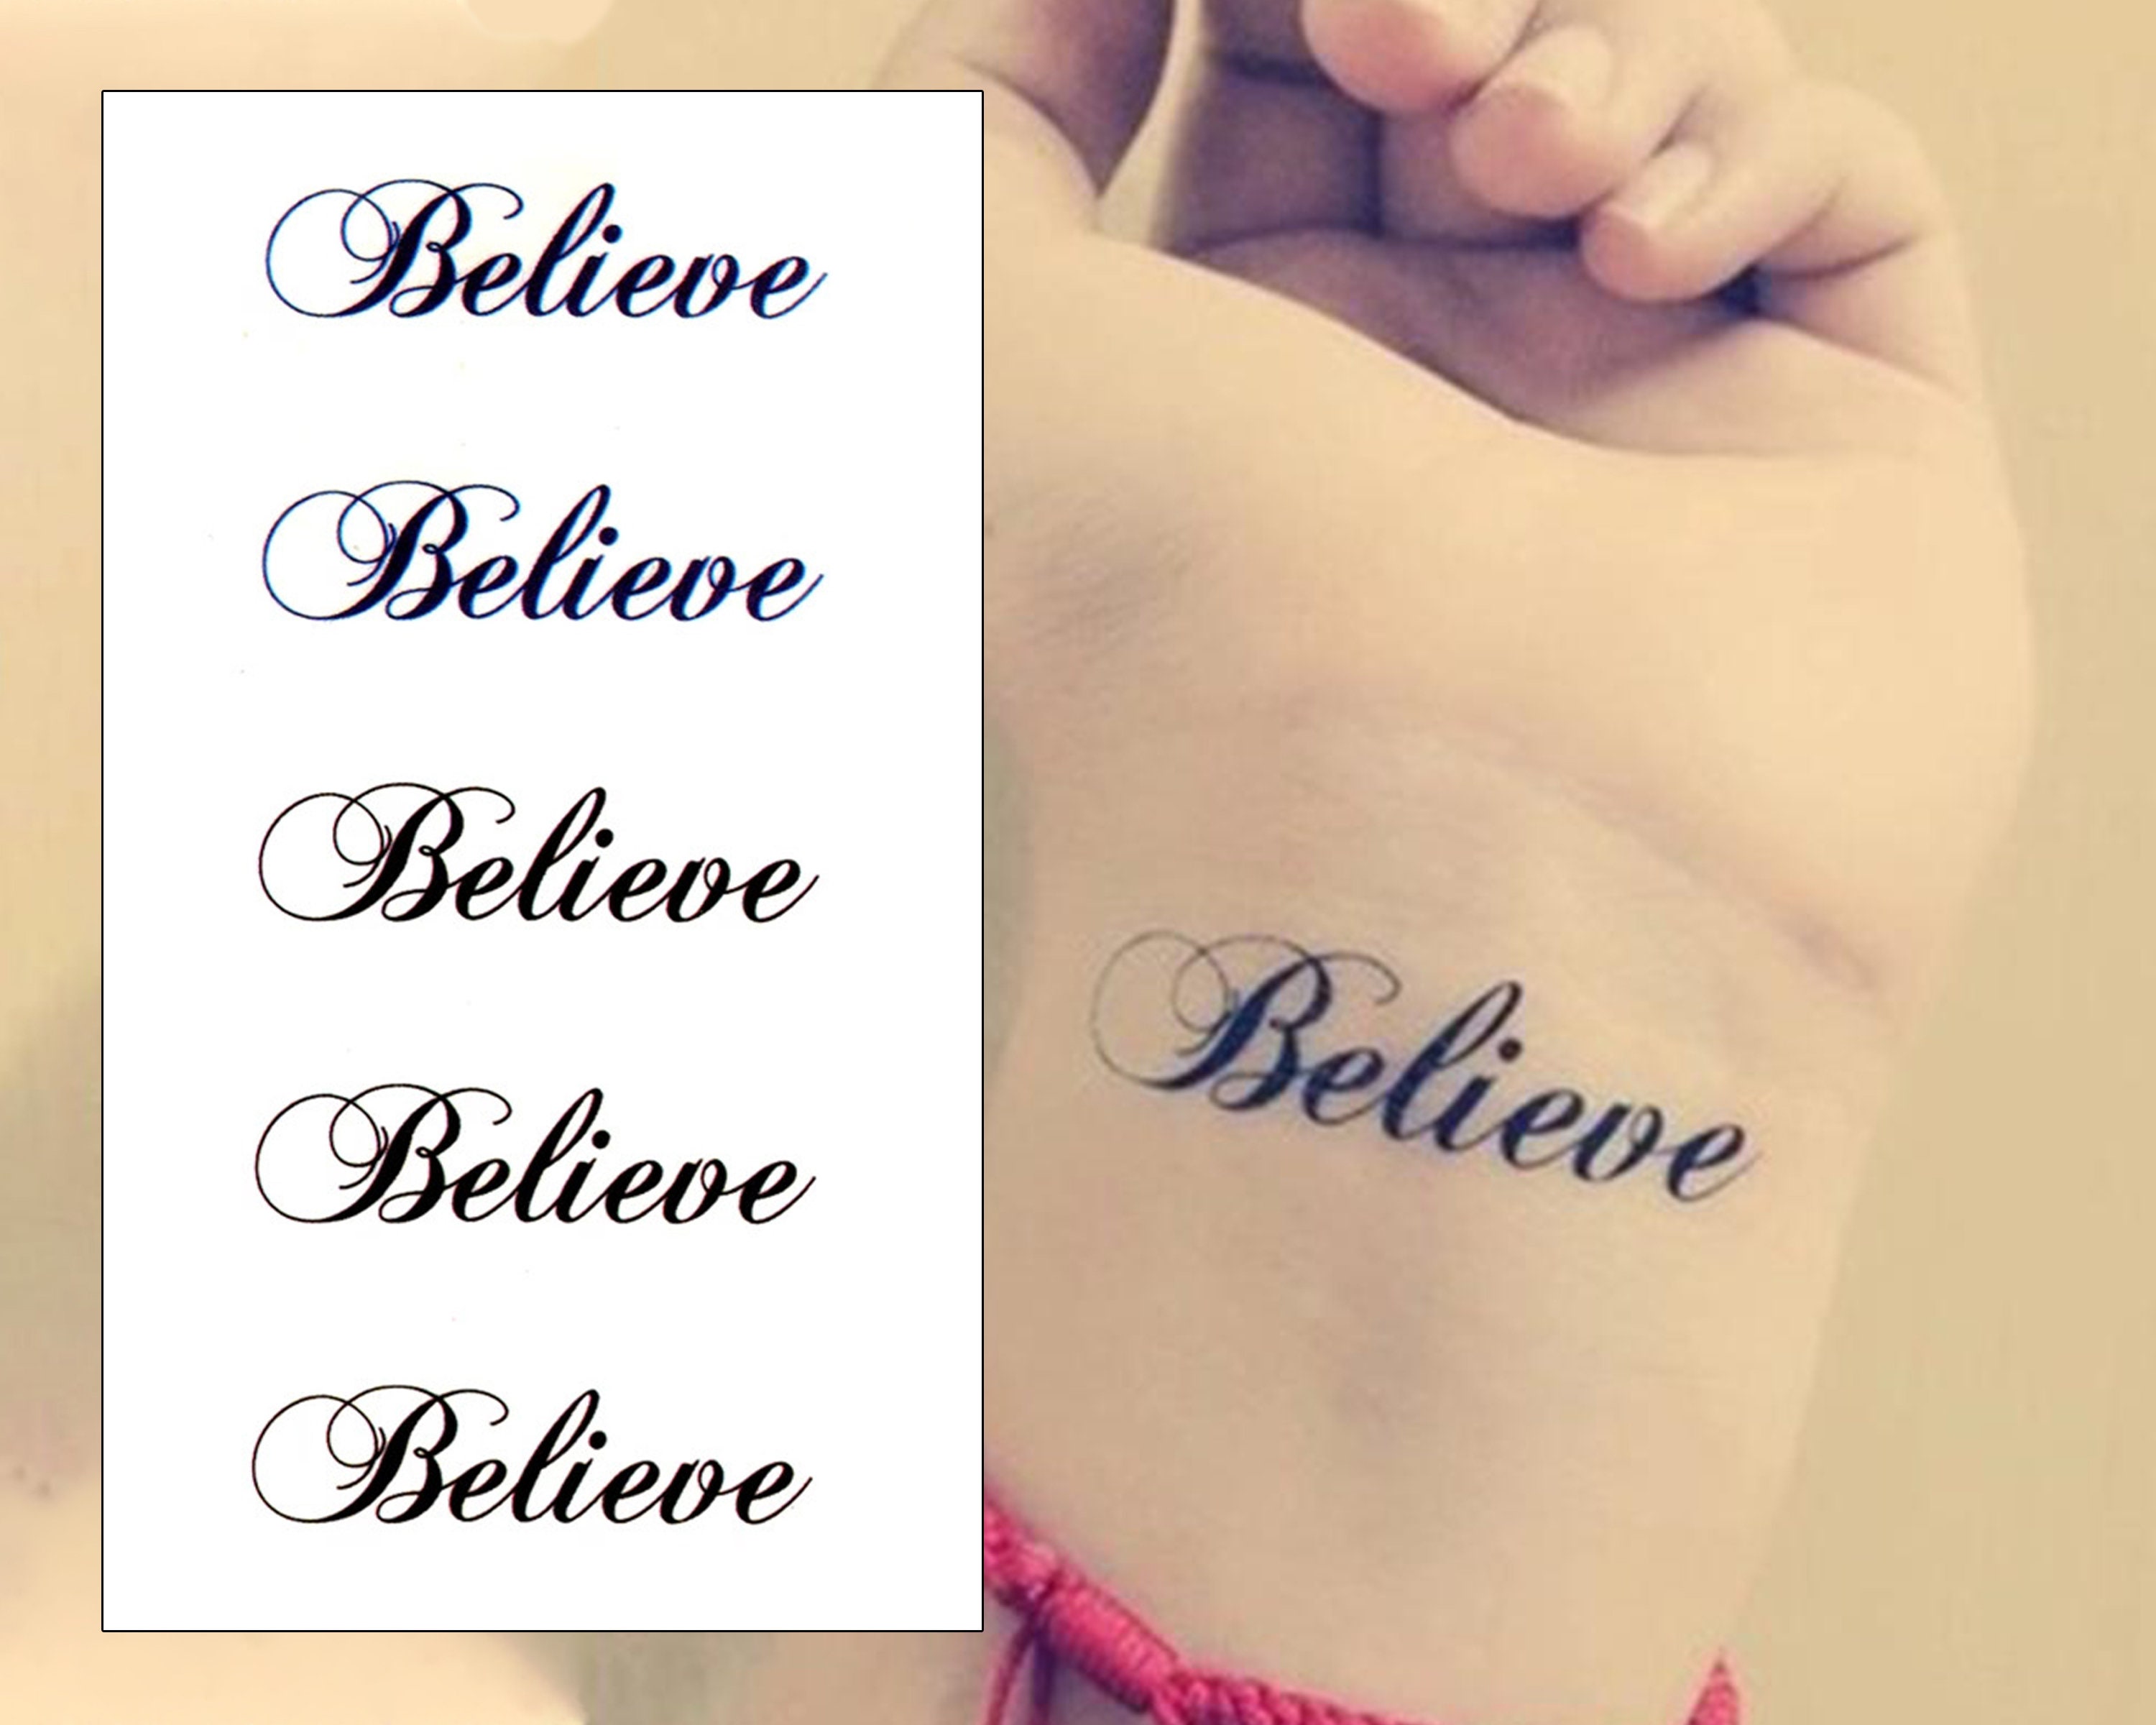 believe tattoo by lonelyagnel on DeviantArt